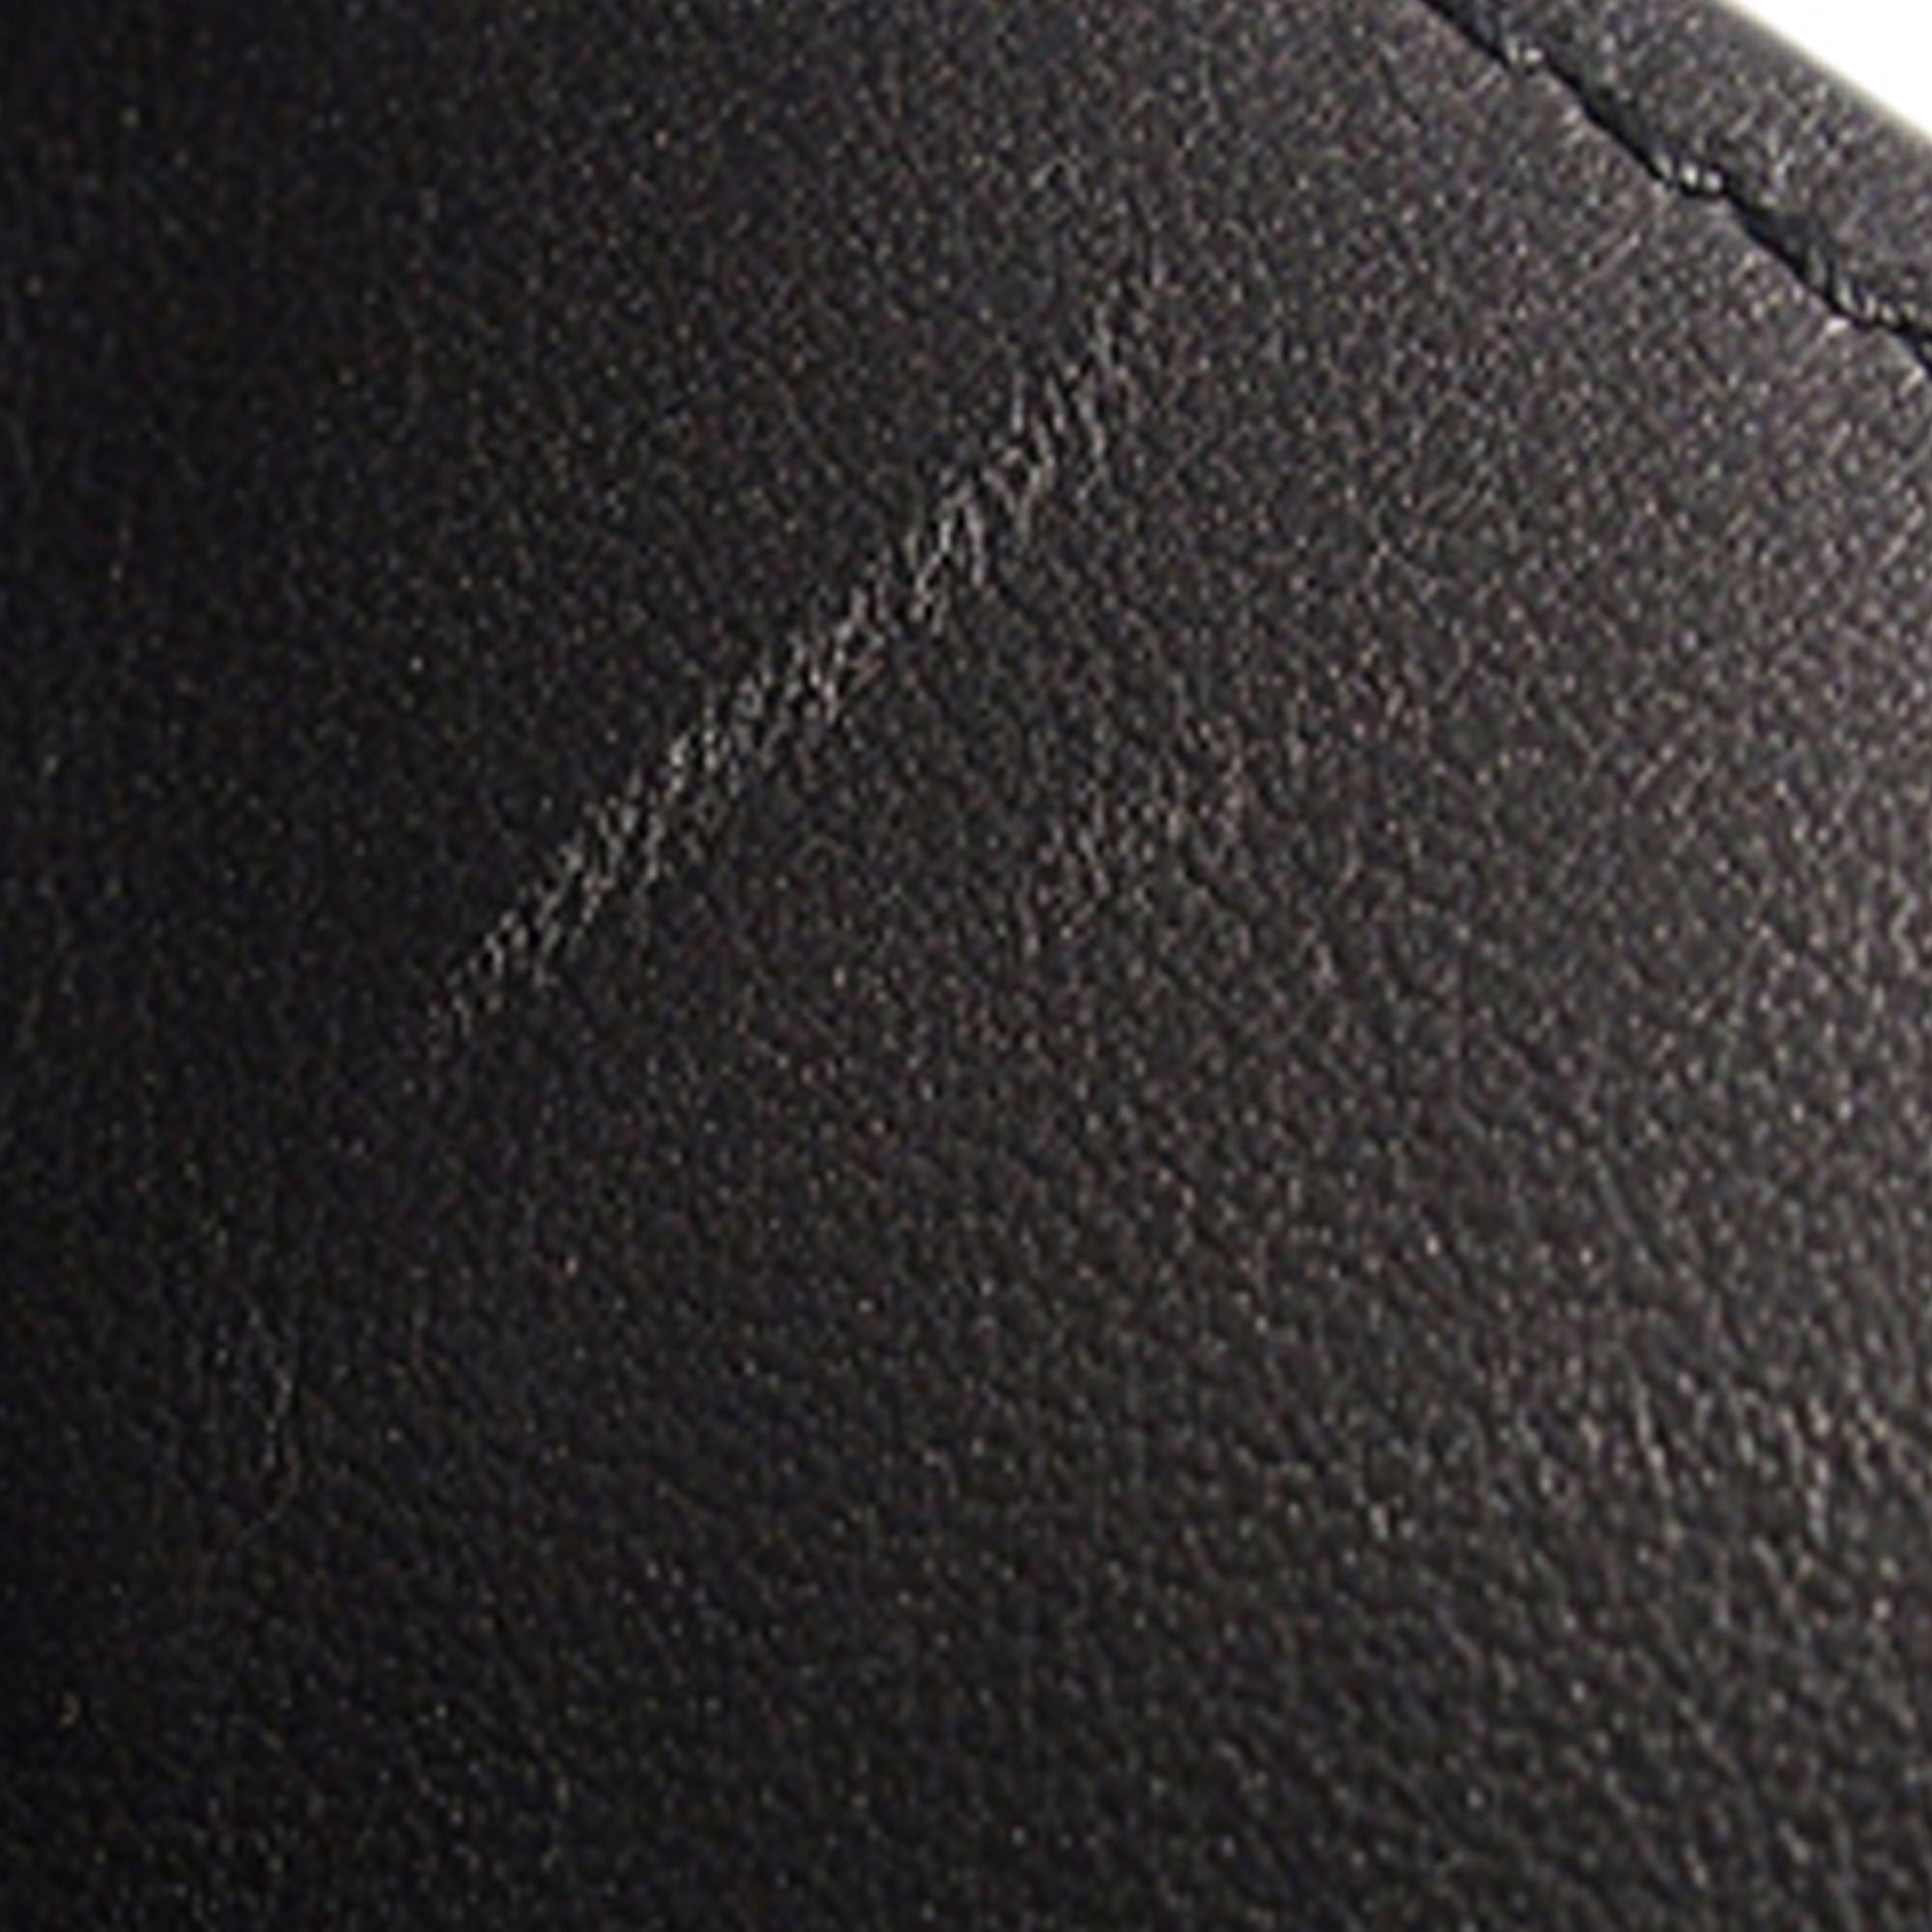 Black Louis Vuitton Milla PM Satchel – Designer Revival